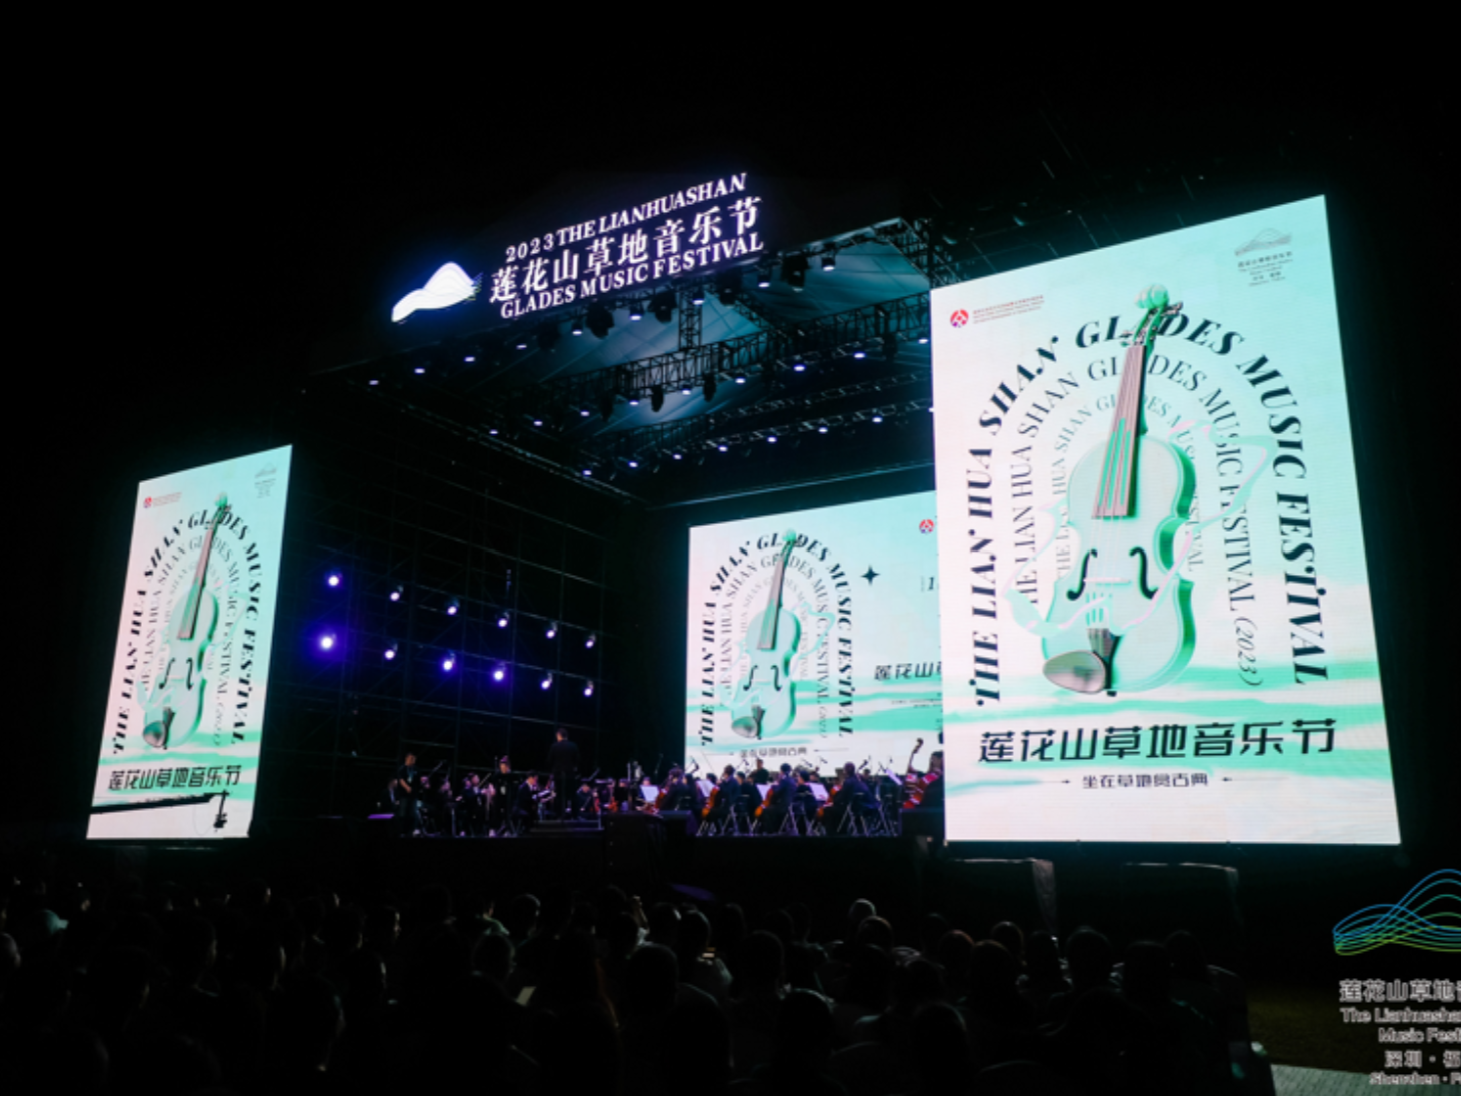 2023莲花山草地音乐节首场音乐会开启古典盛宴 